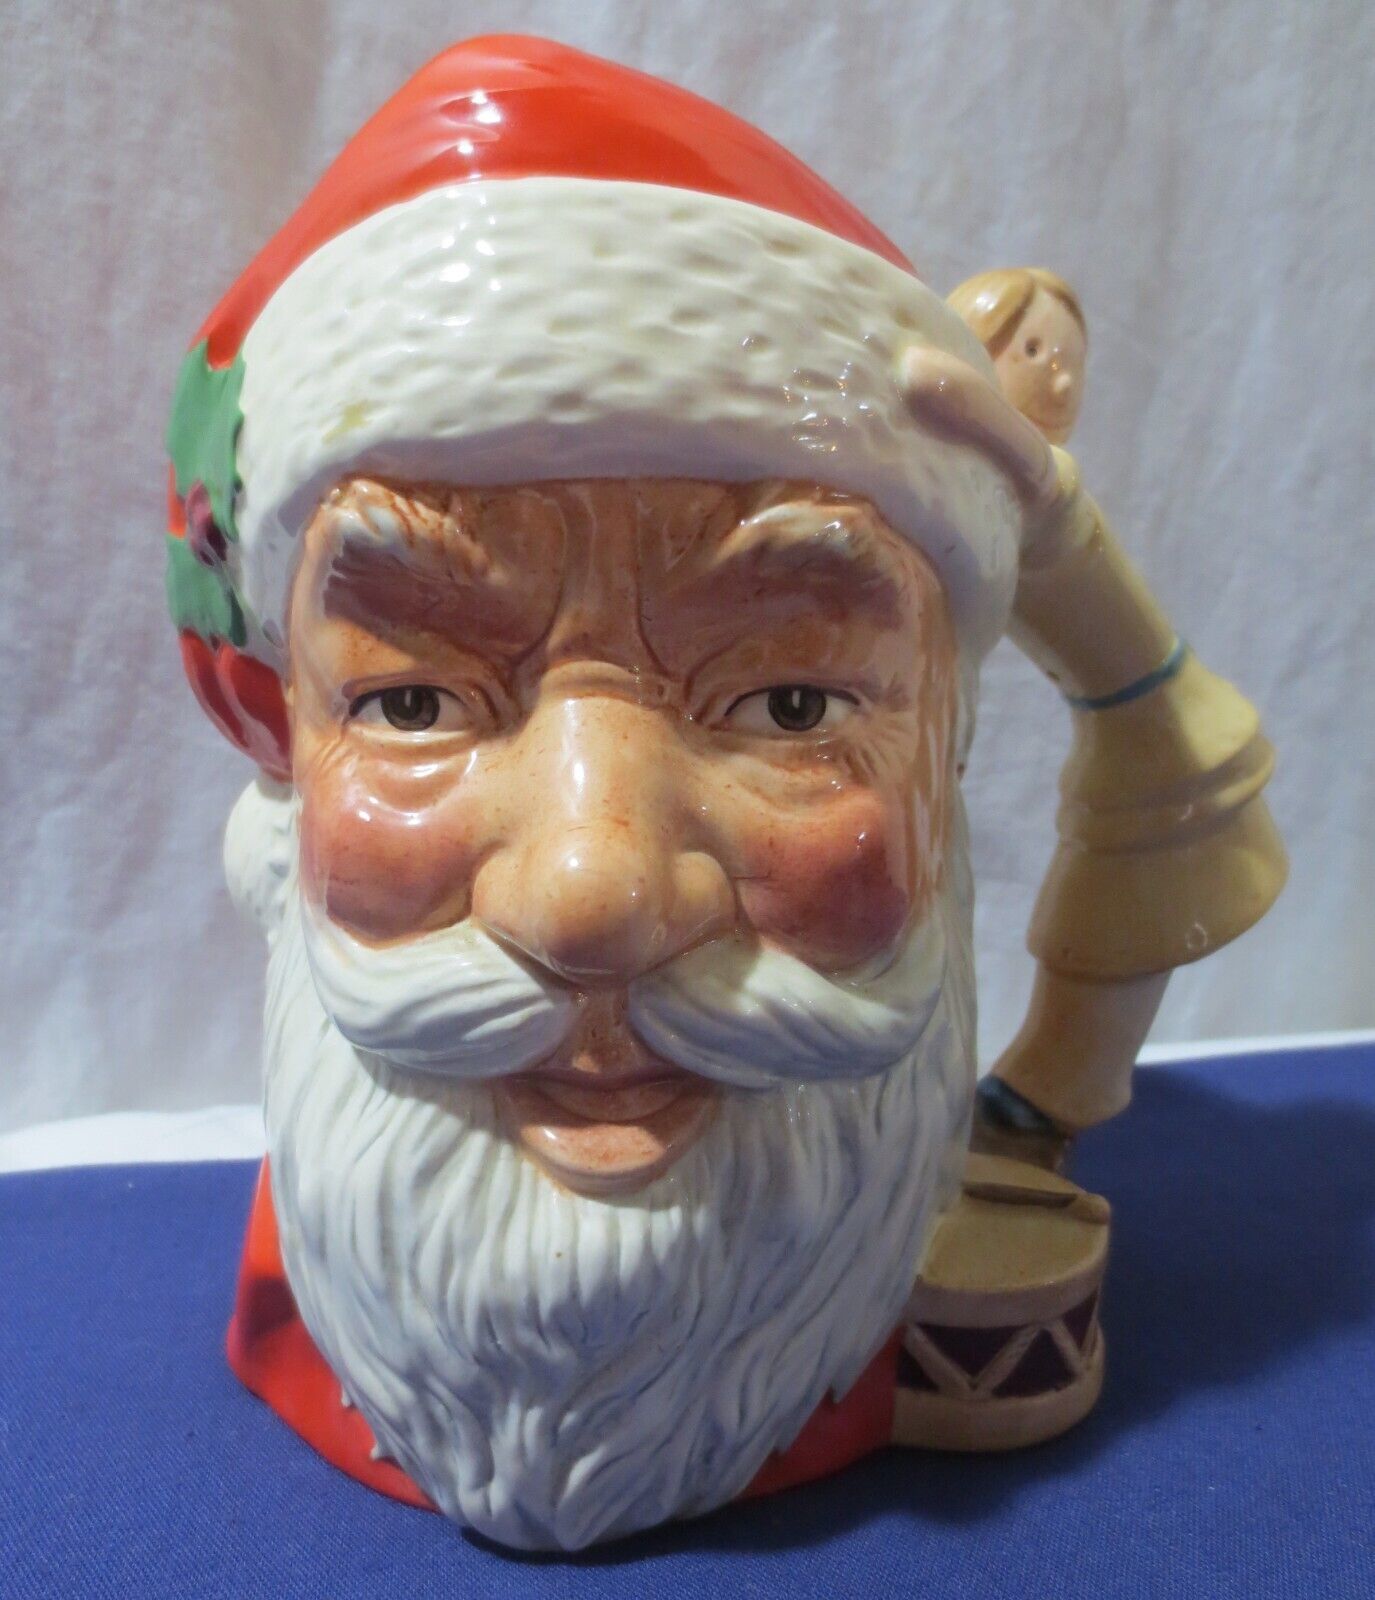 Royal Doulton Large Character Toby Jug Mug Pitcher 1981 Santa Claus D6668 - $60.00